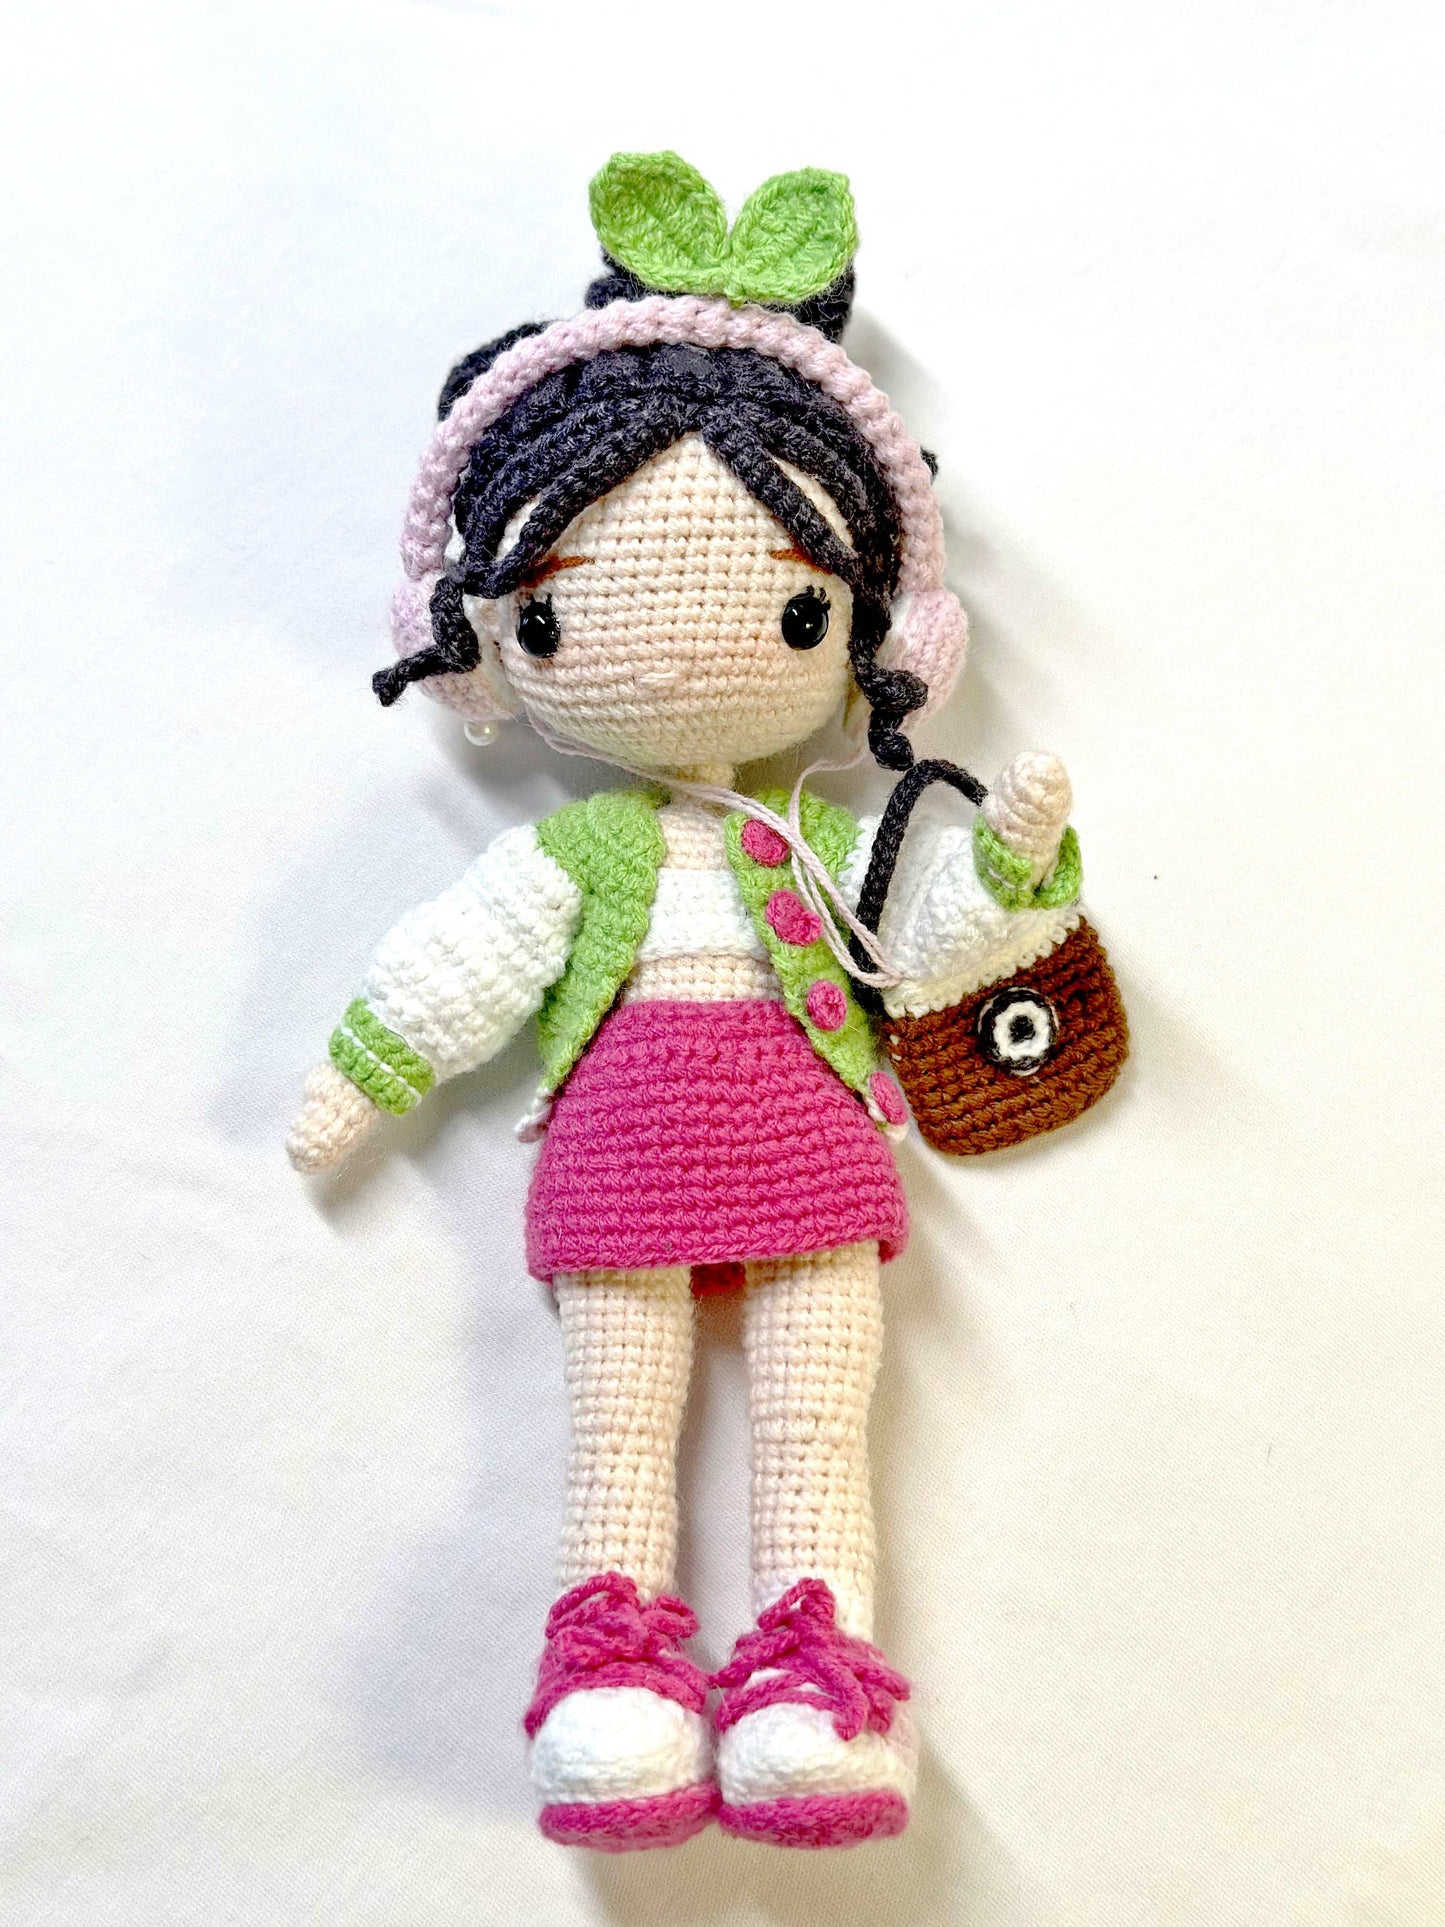 Artistic Crocheted Girl Doll for Room Embellishment